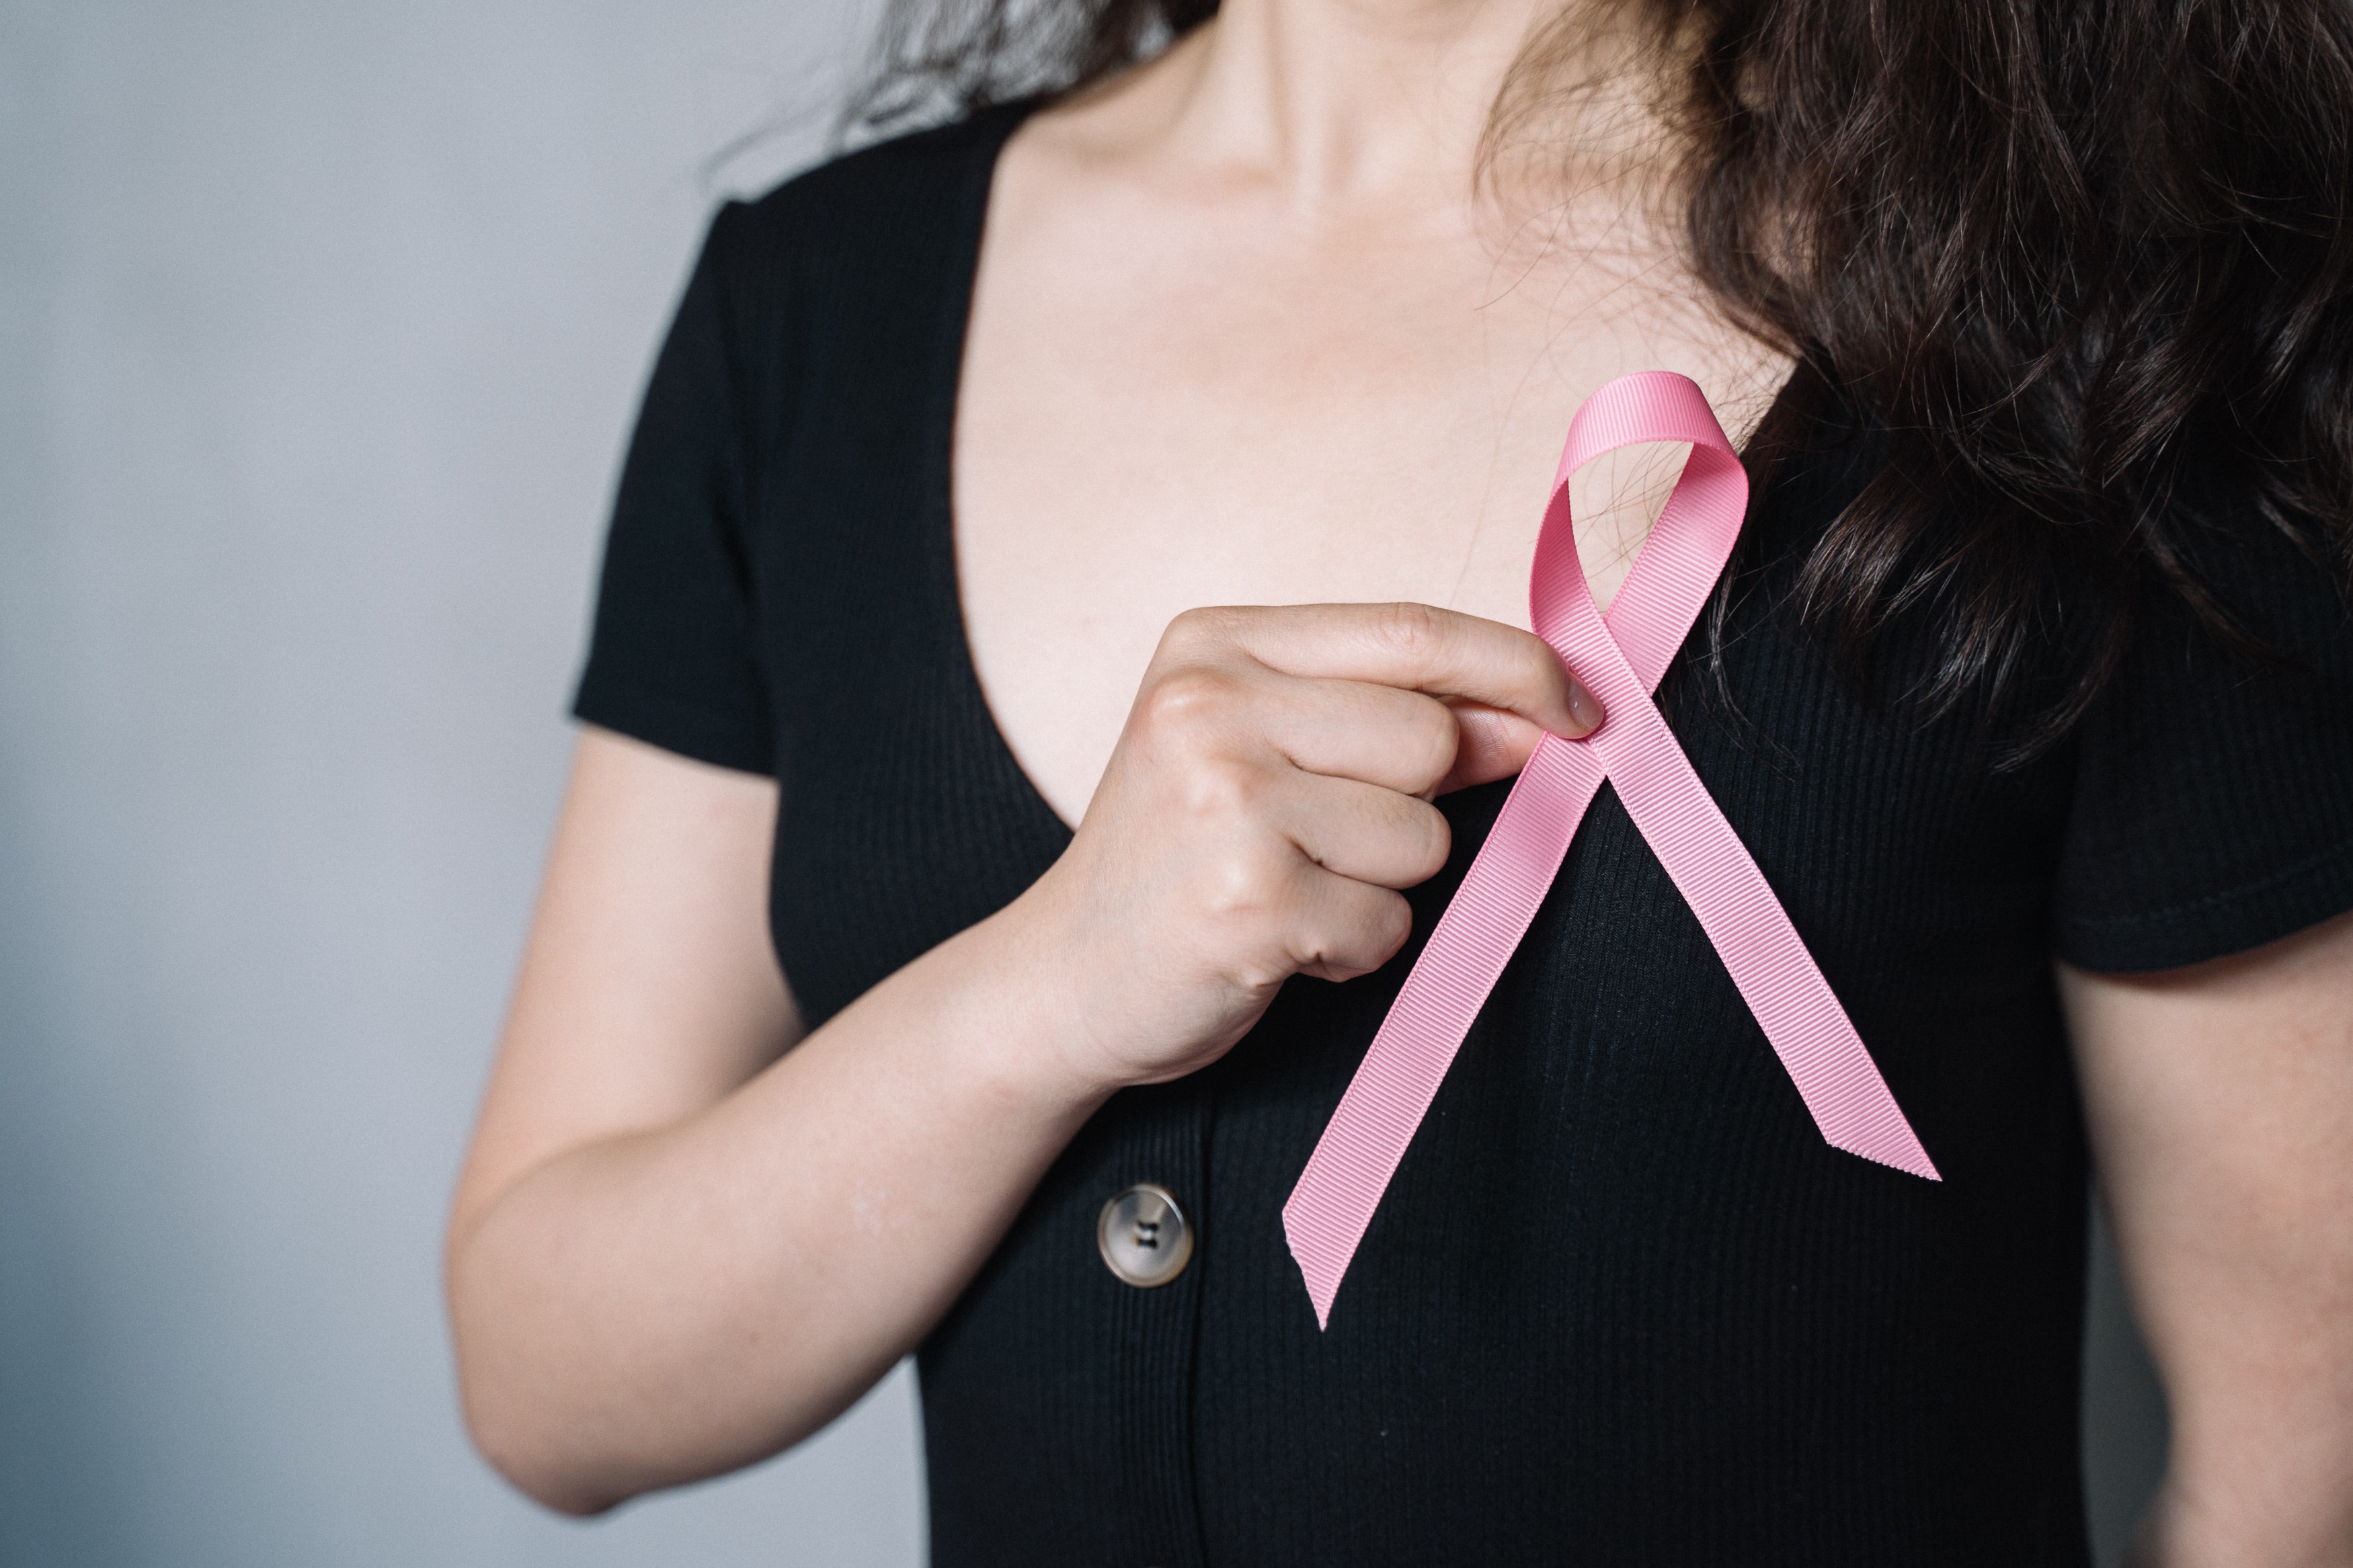 El cáncer de mama se puede presentar tanto en hombres como en mujeres; pero, es mucho más común en las mujeres.  (Foto Prensa Libre: Anna Tarazevich/Pexels)